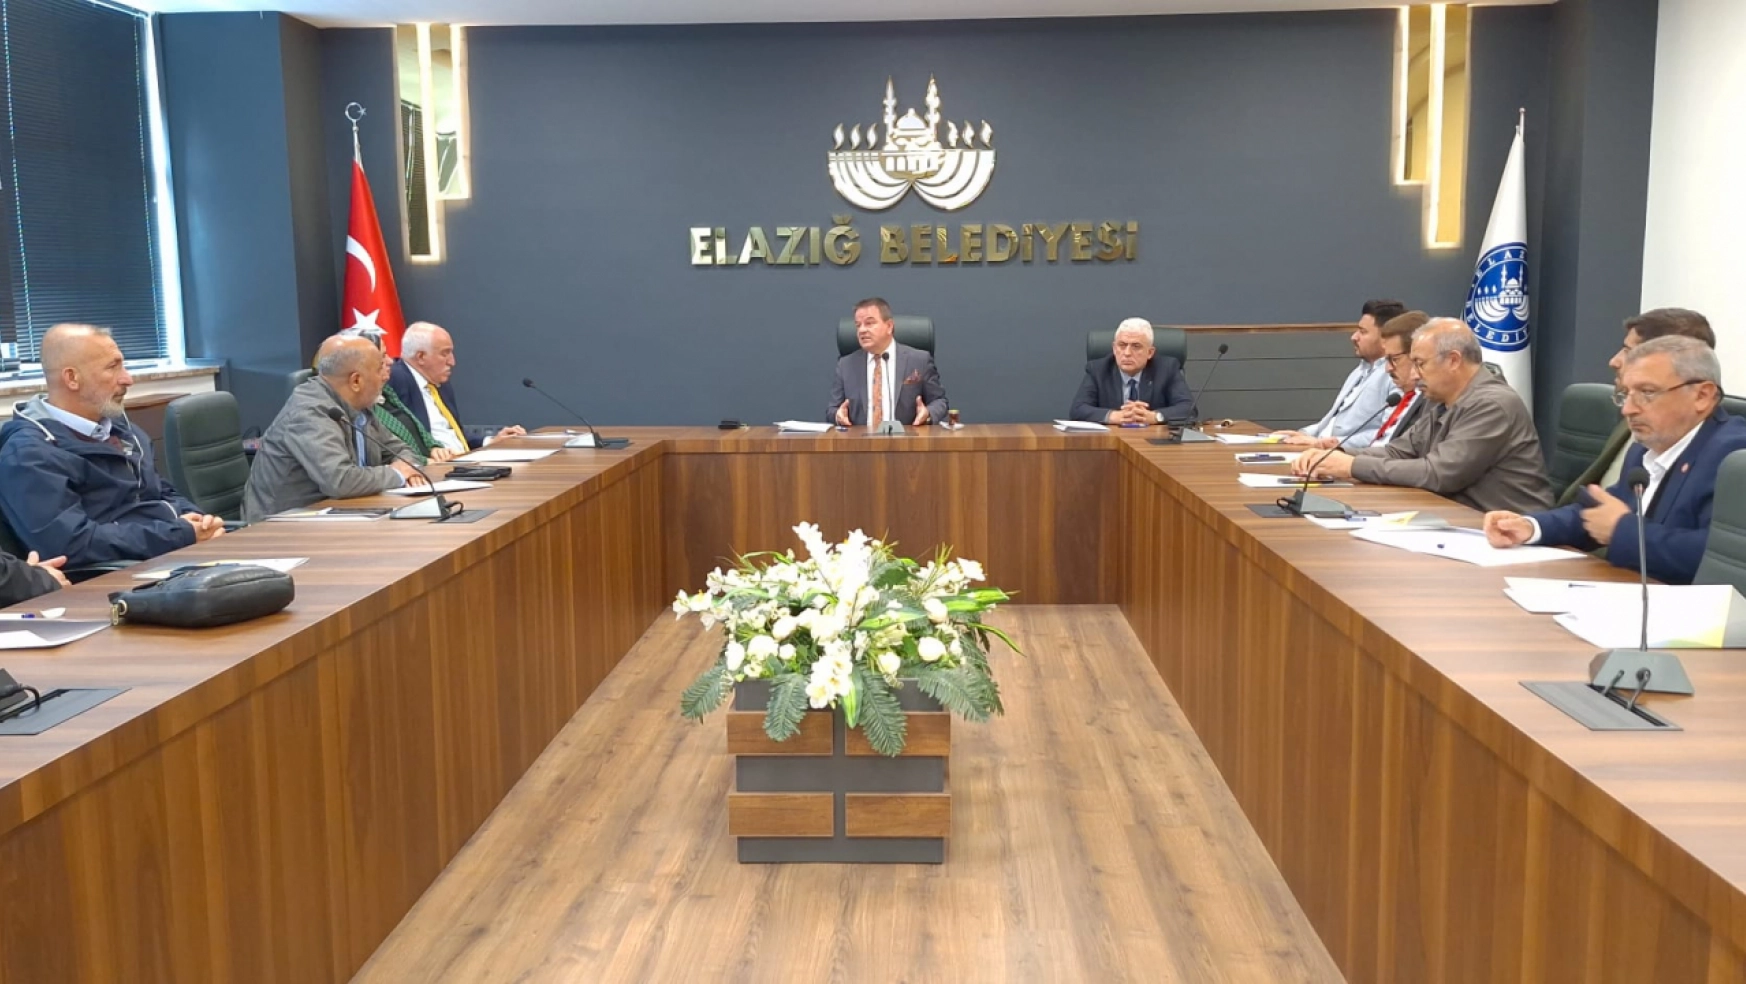 Elazığ Kent Konseyi İlk Yürütme Kurulu Toplantısını Gerçekleştirdi